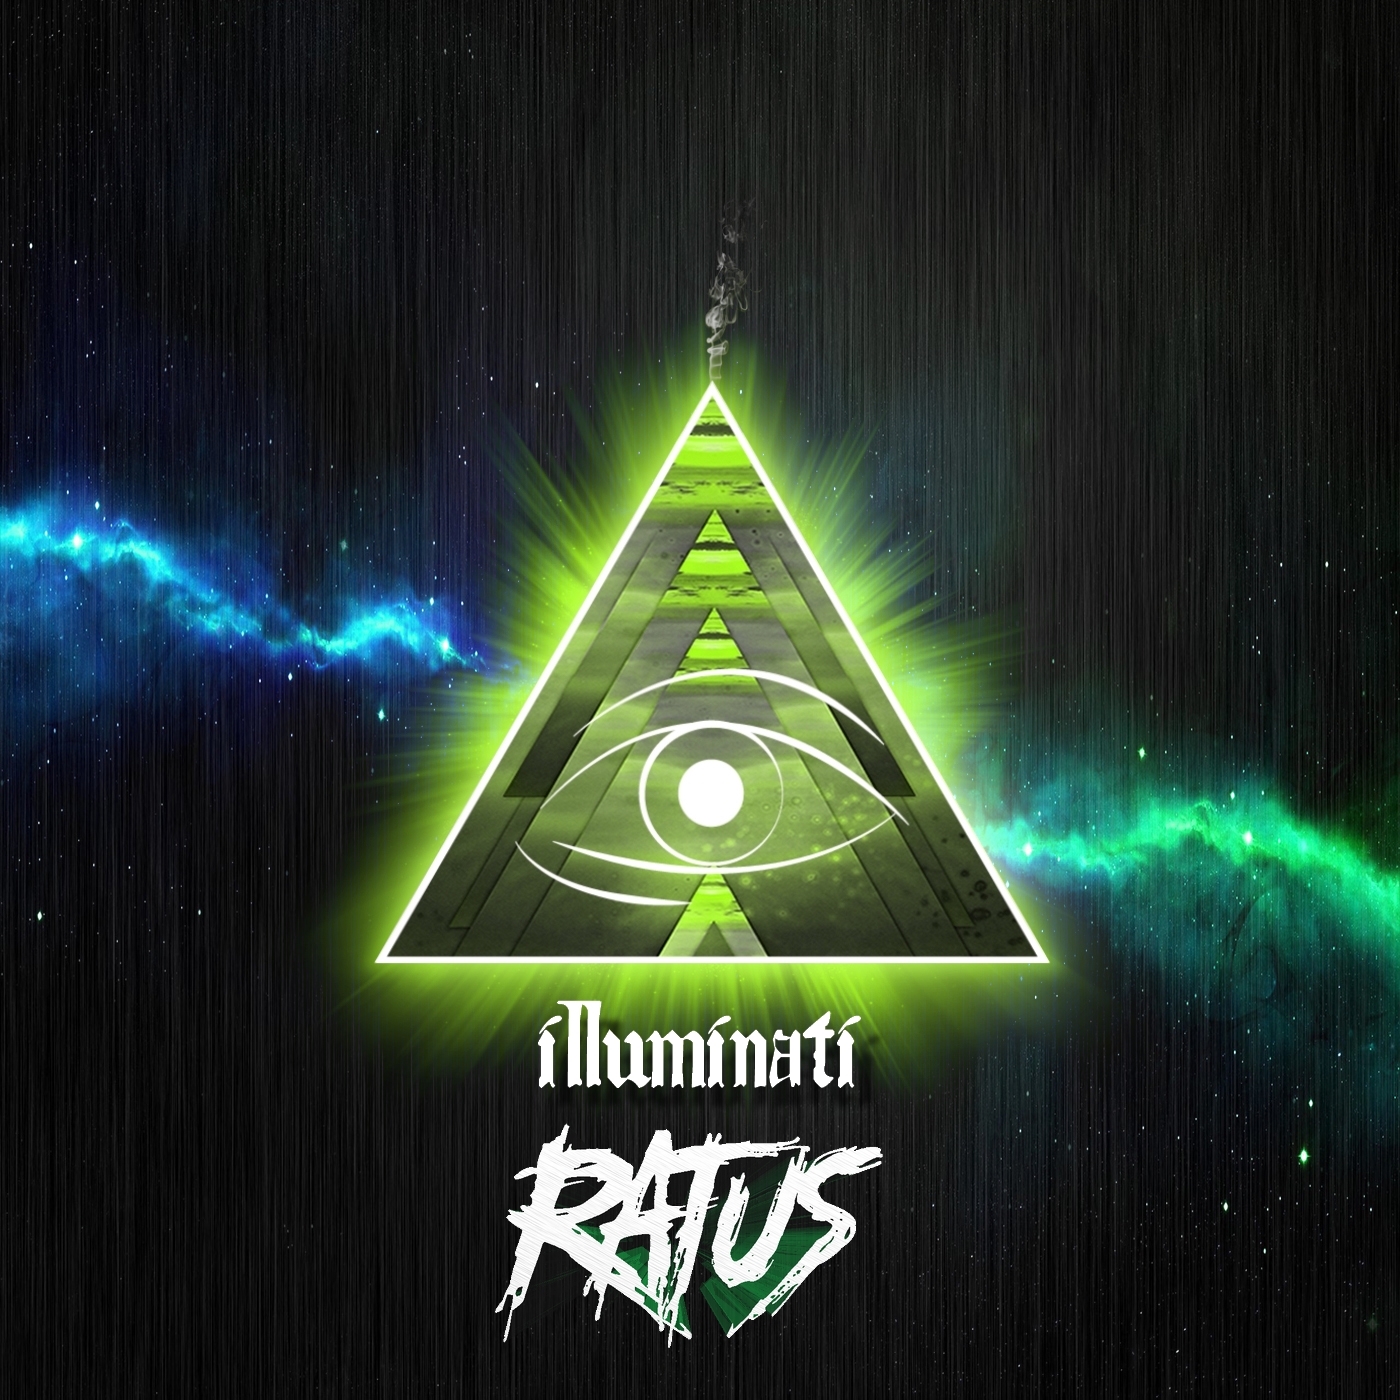 Illuminati Song Remix Download - illuminati earrape roblox id 2019